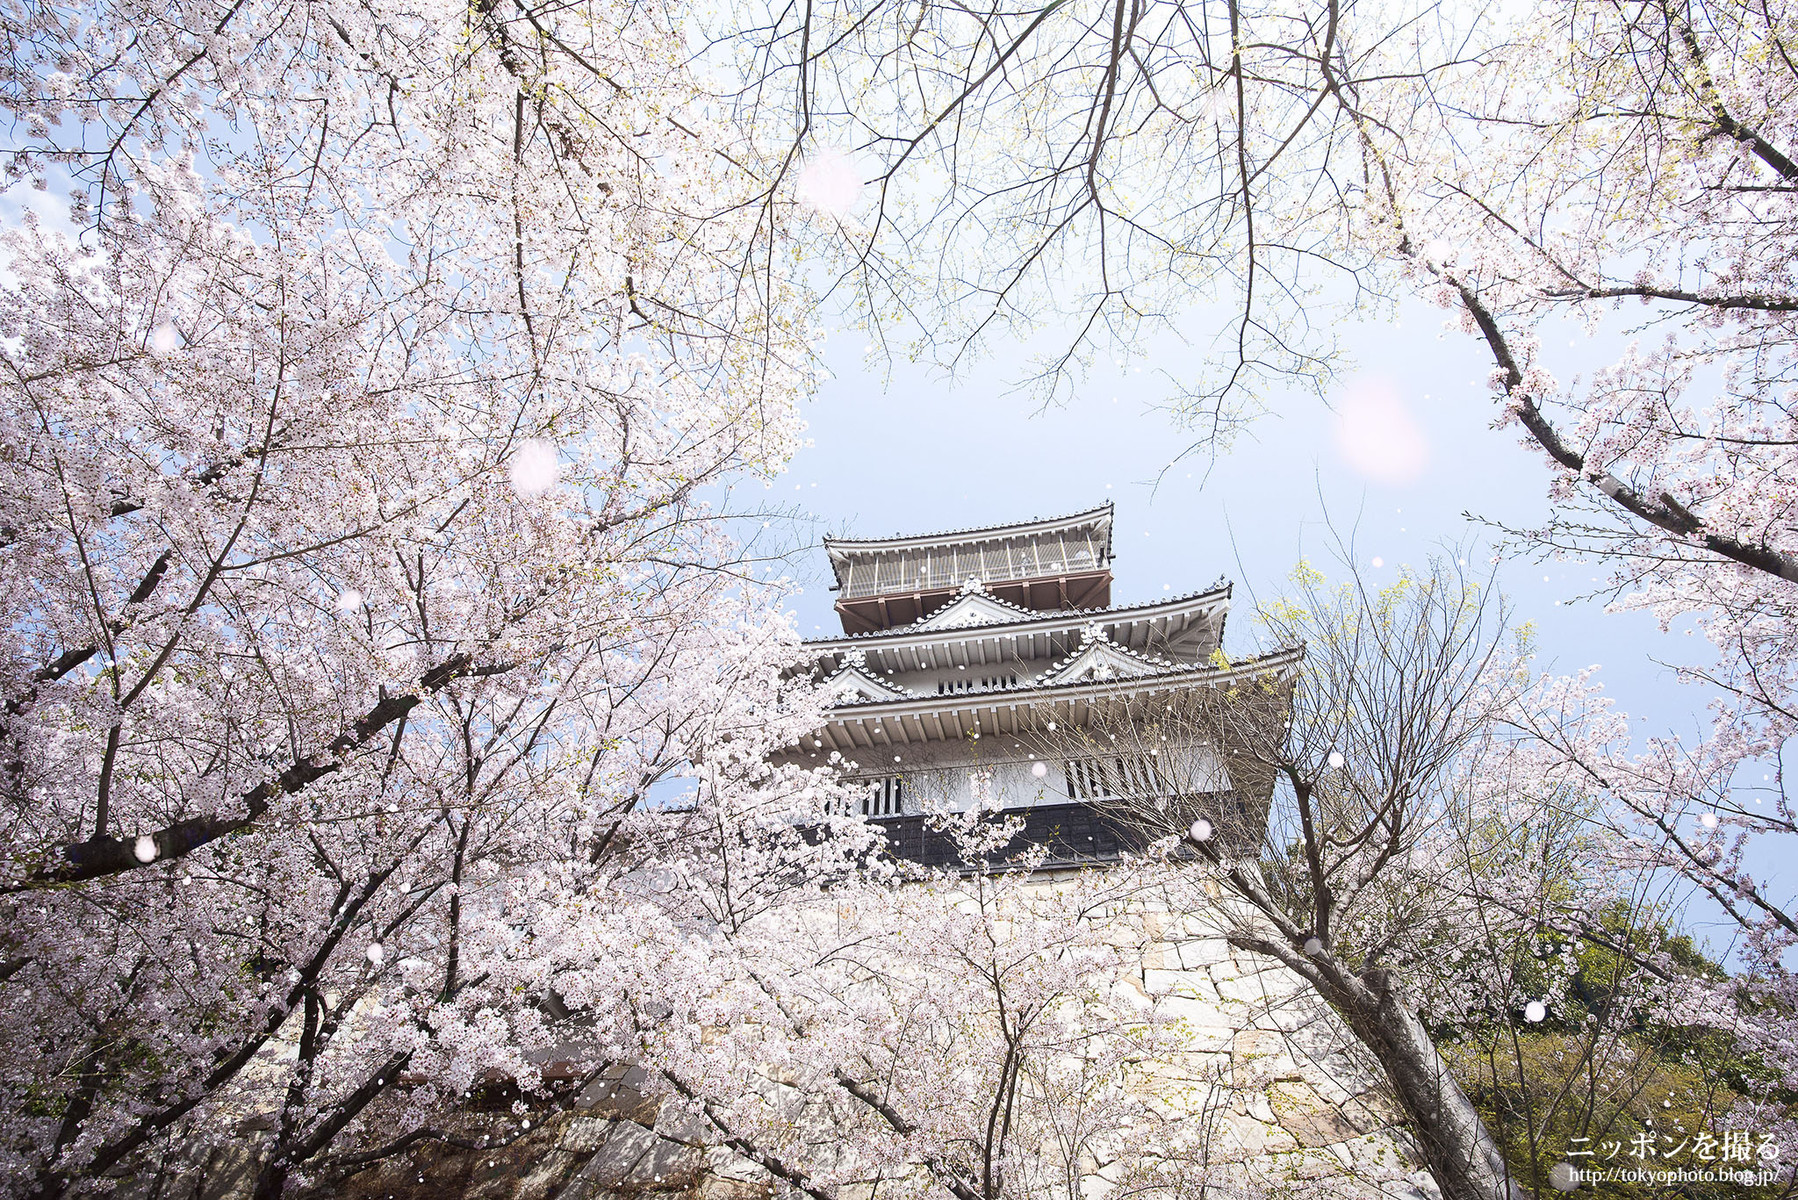 愛知の桜 岩崎城で桜を撮ってきた ニッポンを撮る